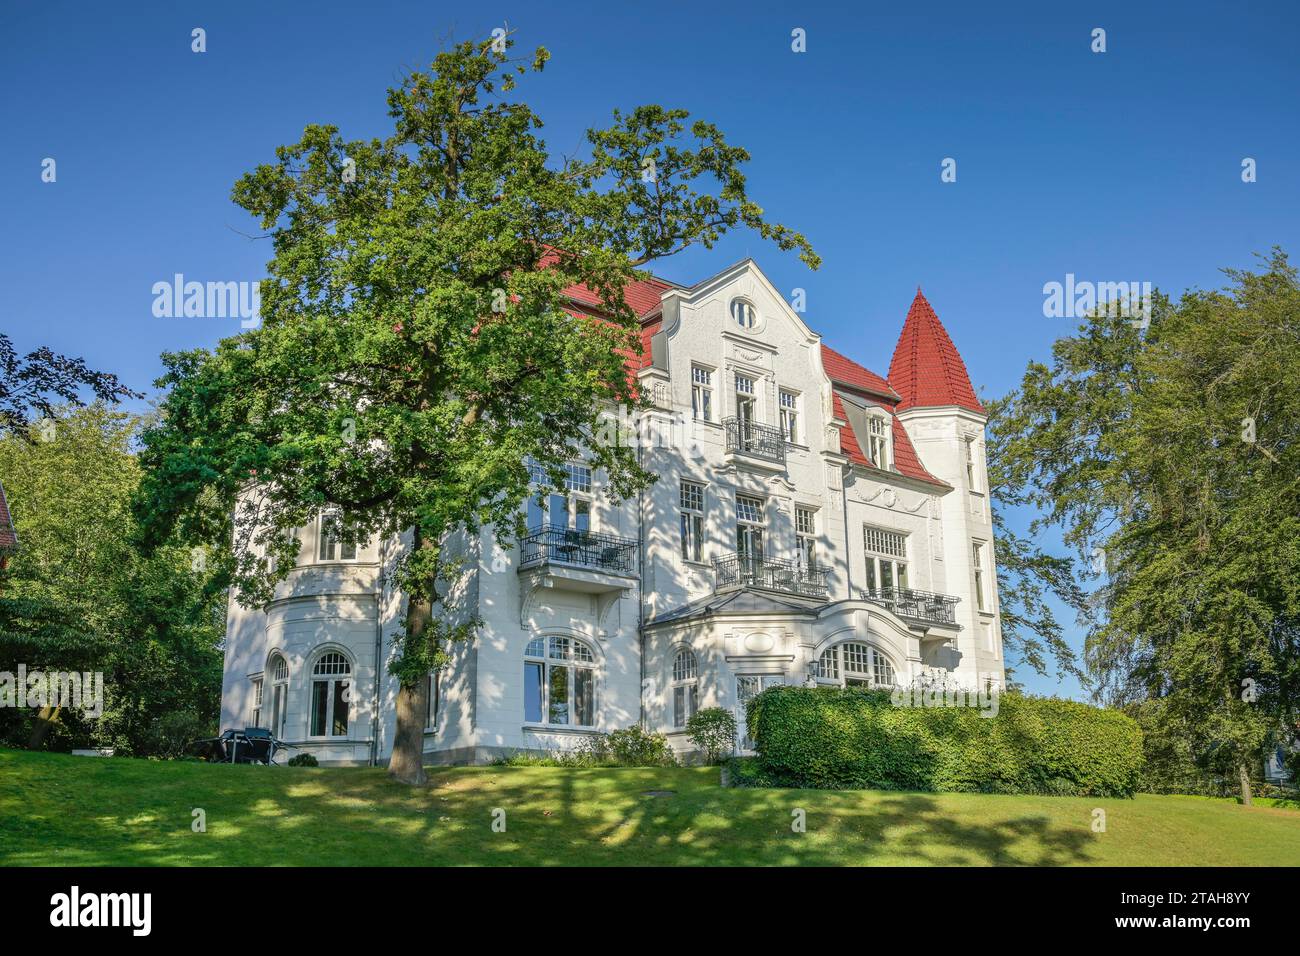 Villa Staudt, Delbrückstraße, Heringsdorf, Usedom, Mecklenburg-Vorpommern, Deutschland Banque D'Images